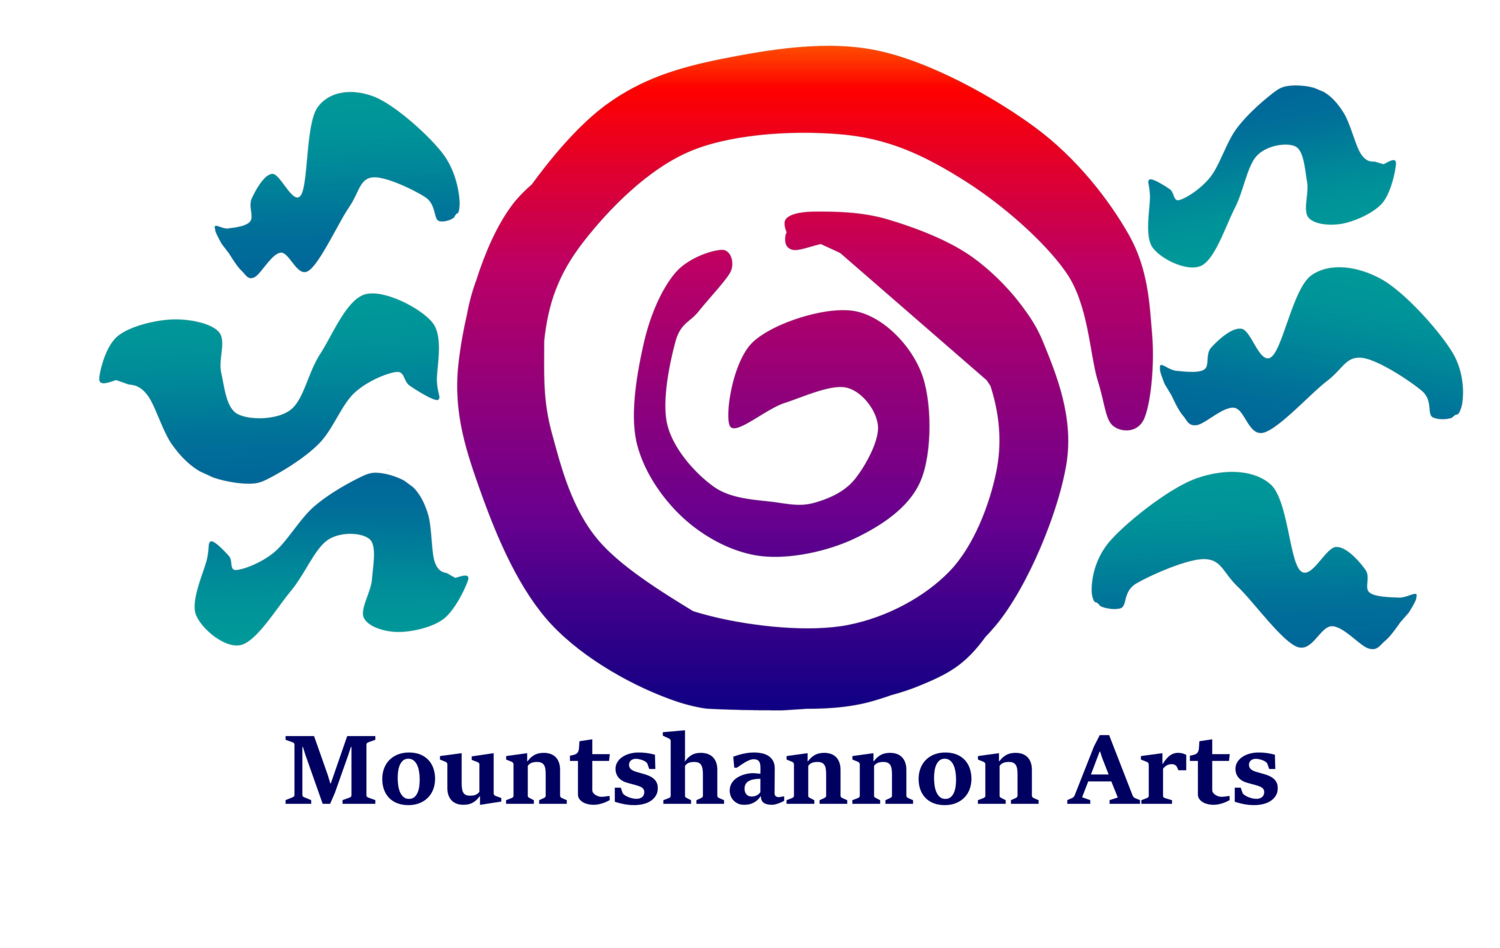 Mountshannon Arts